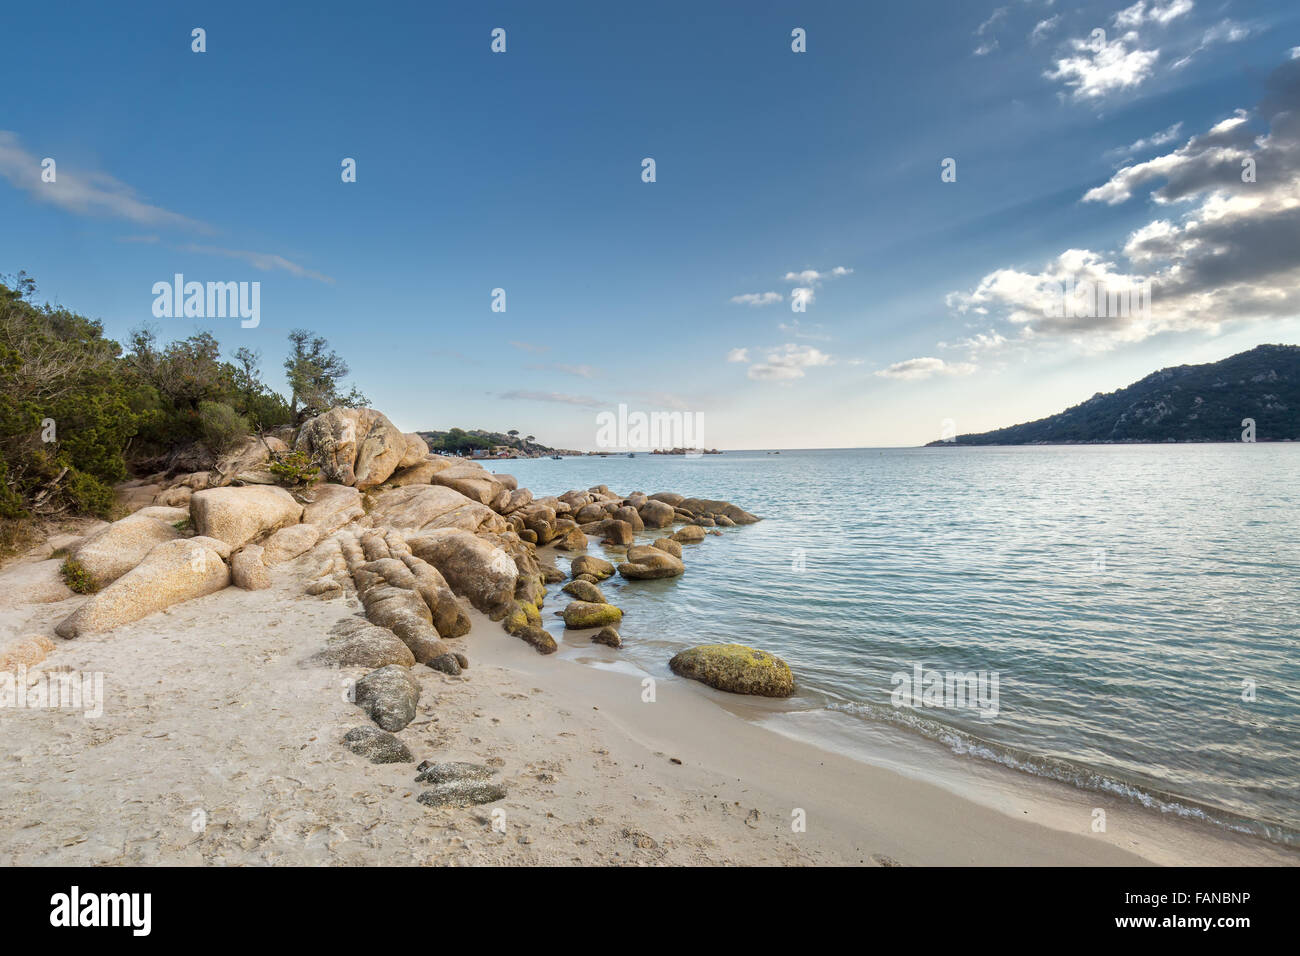 Les Roches et rochers dans une mer turquoise translucide et bleu ciel à la plage de Santa Giulia en Corse Banque D'Images